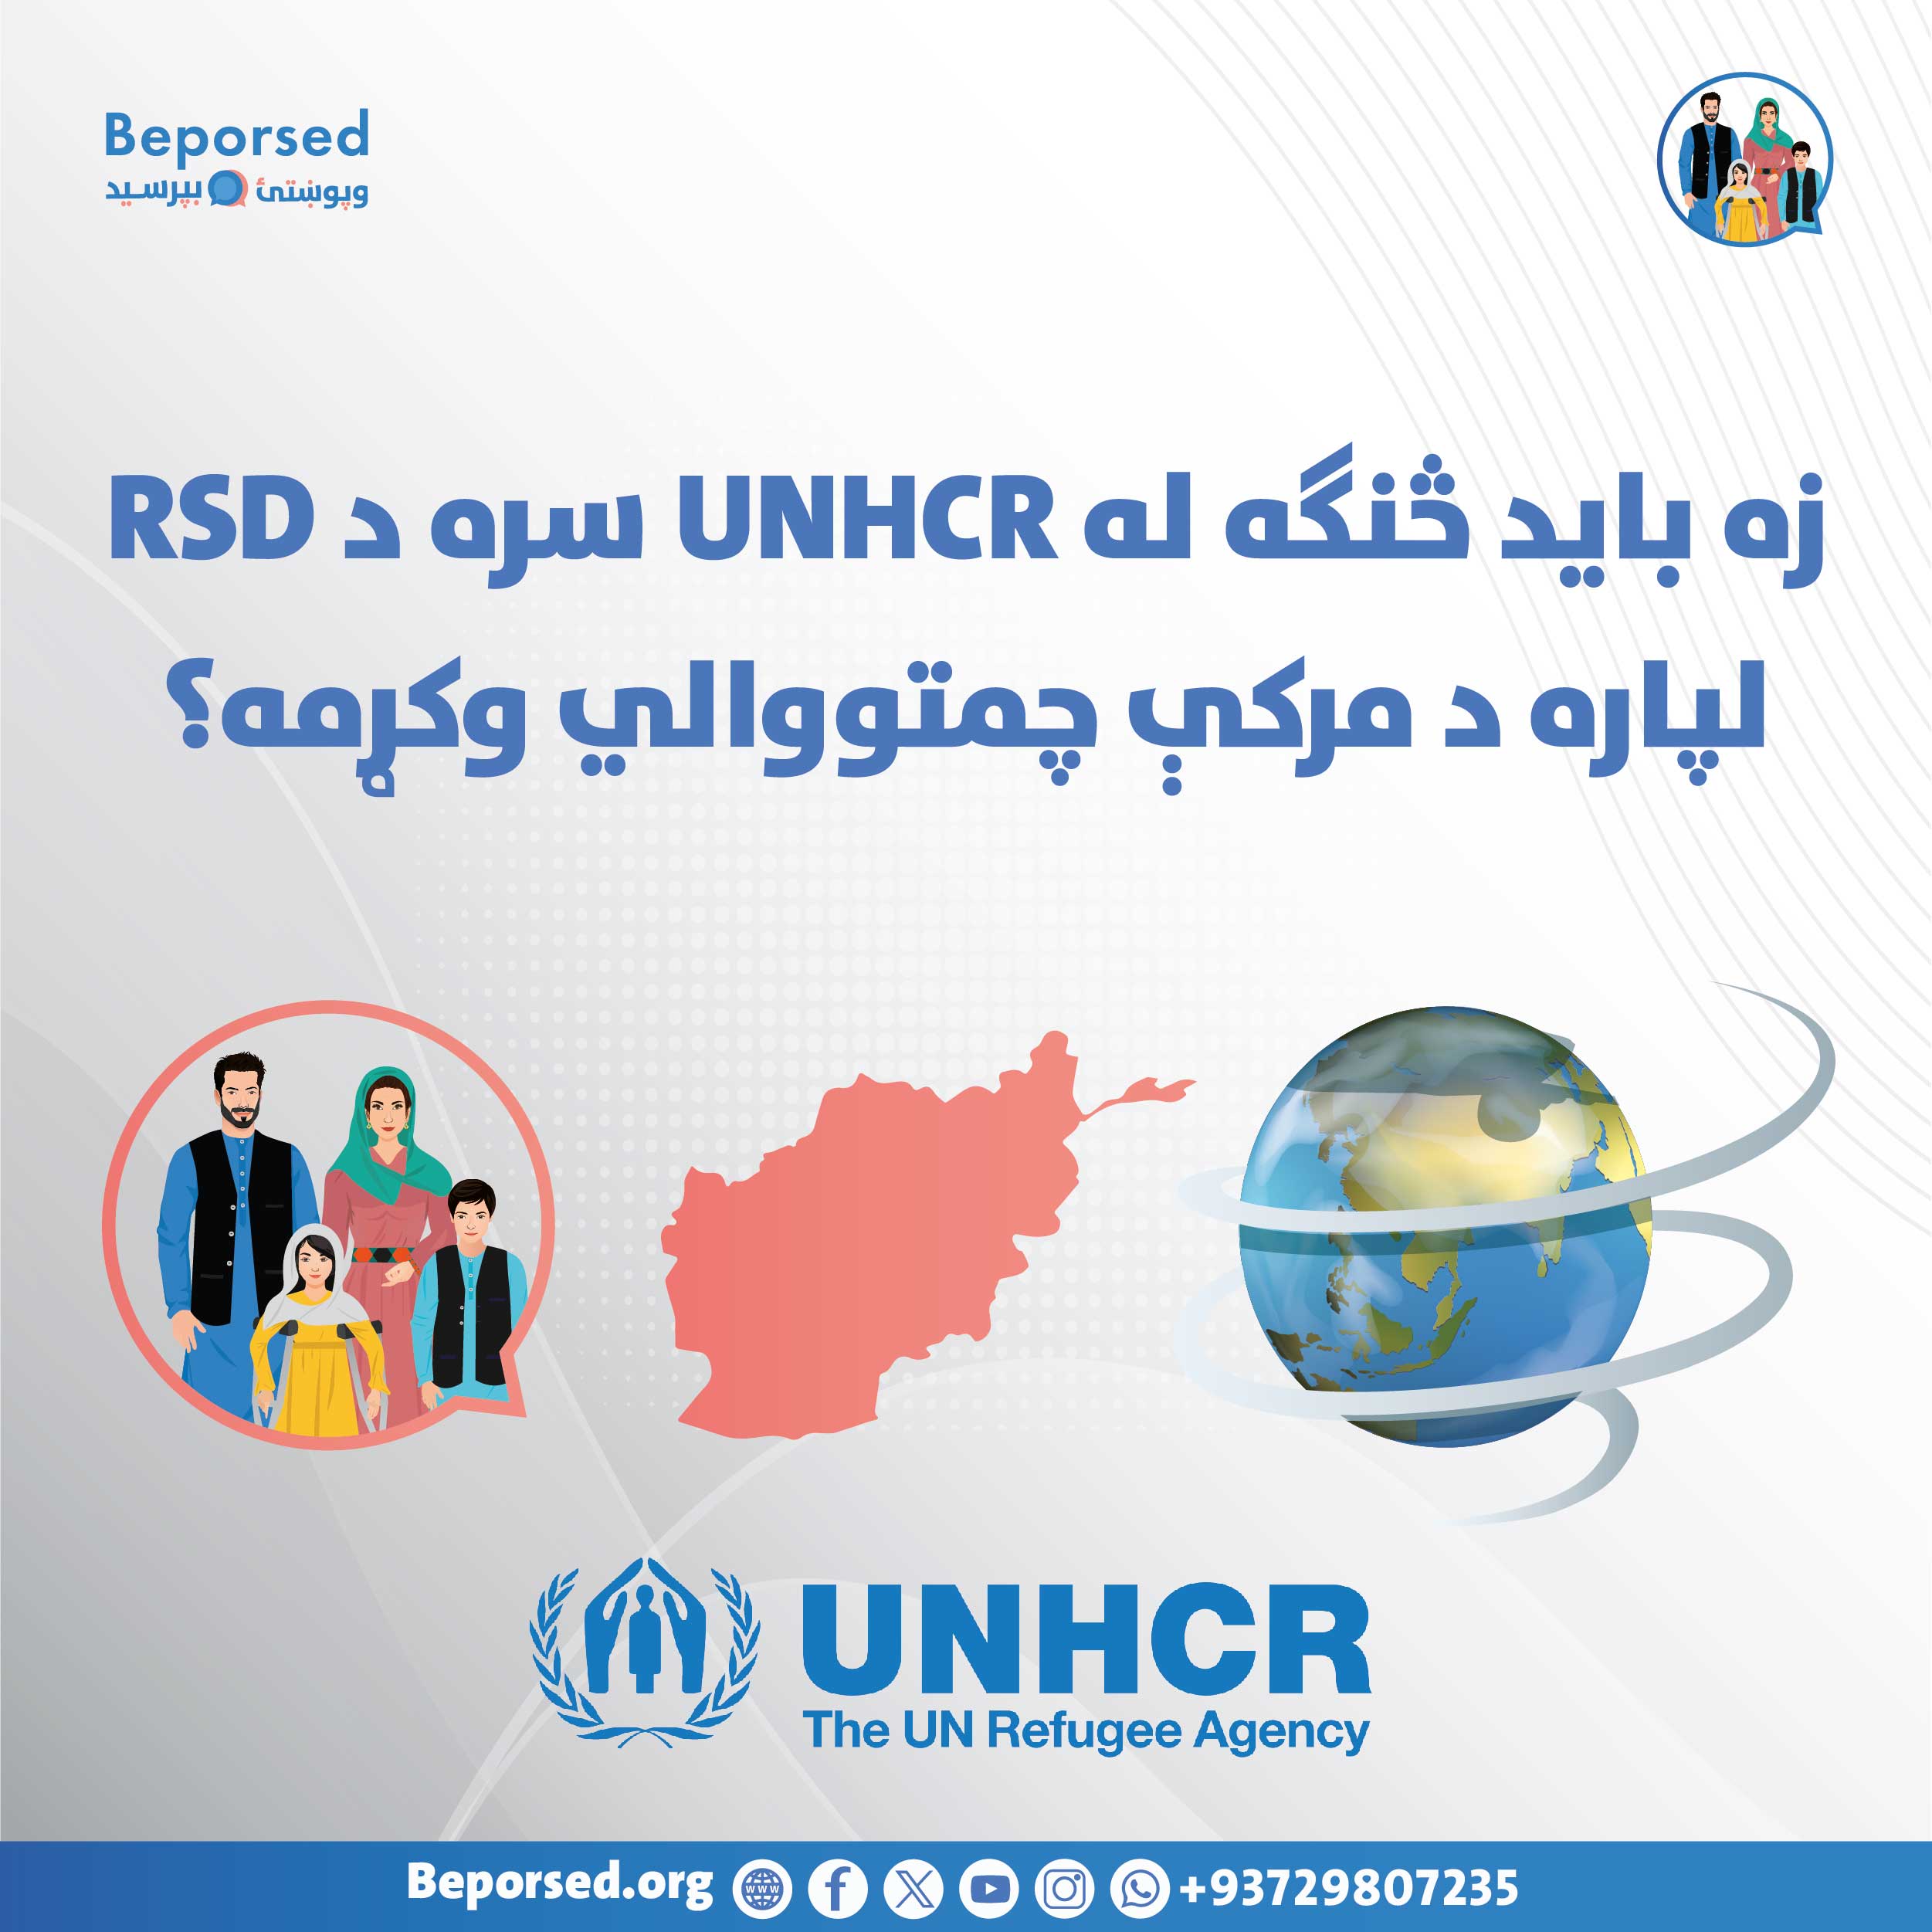 چطور باید برای مصاحبه RSD با UNHCR آماده شوم؟-02.jpg